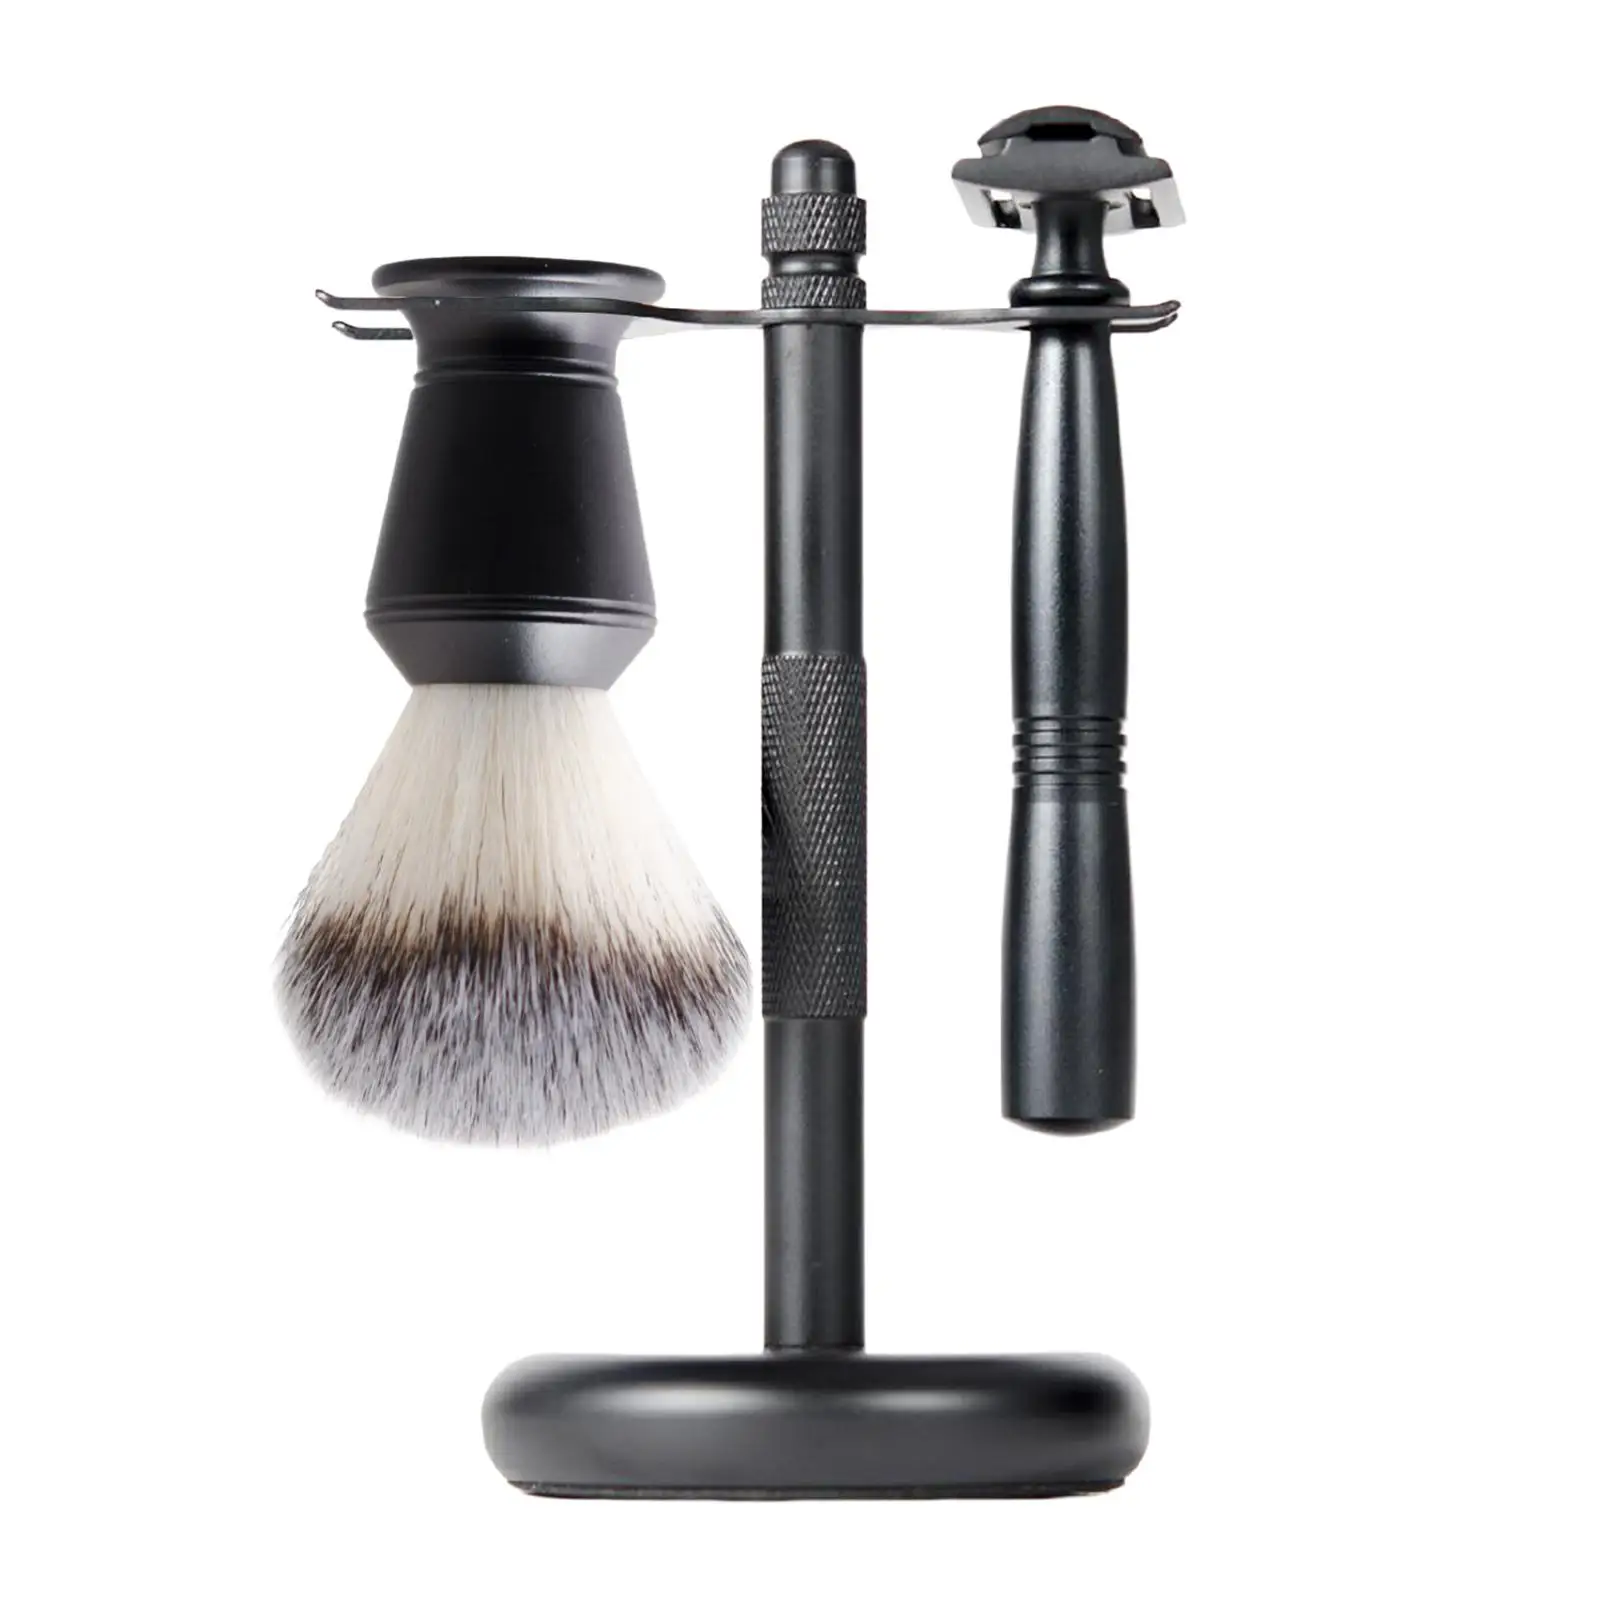 3x Shaving Set Black Color Shaving Brush Holder Stand Shaving Brush Set Includes Edge Razor, Holder, Shaving Brush Gift Set